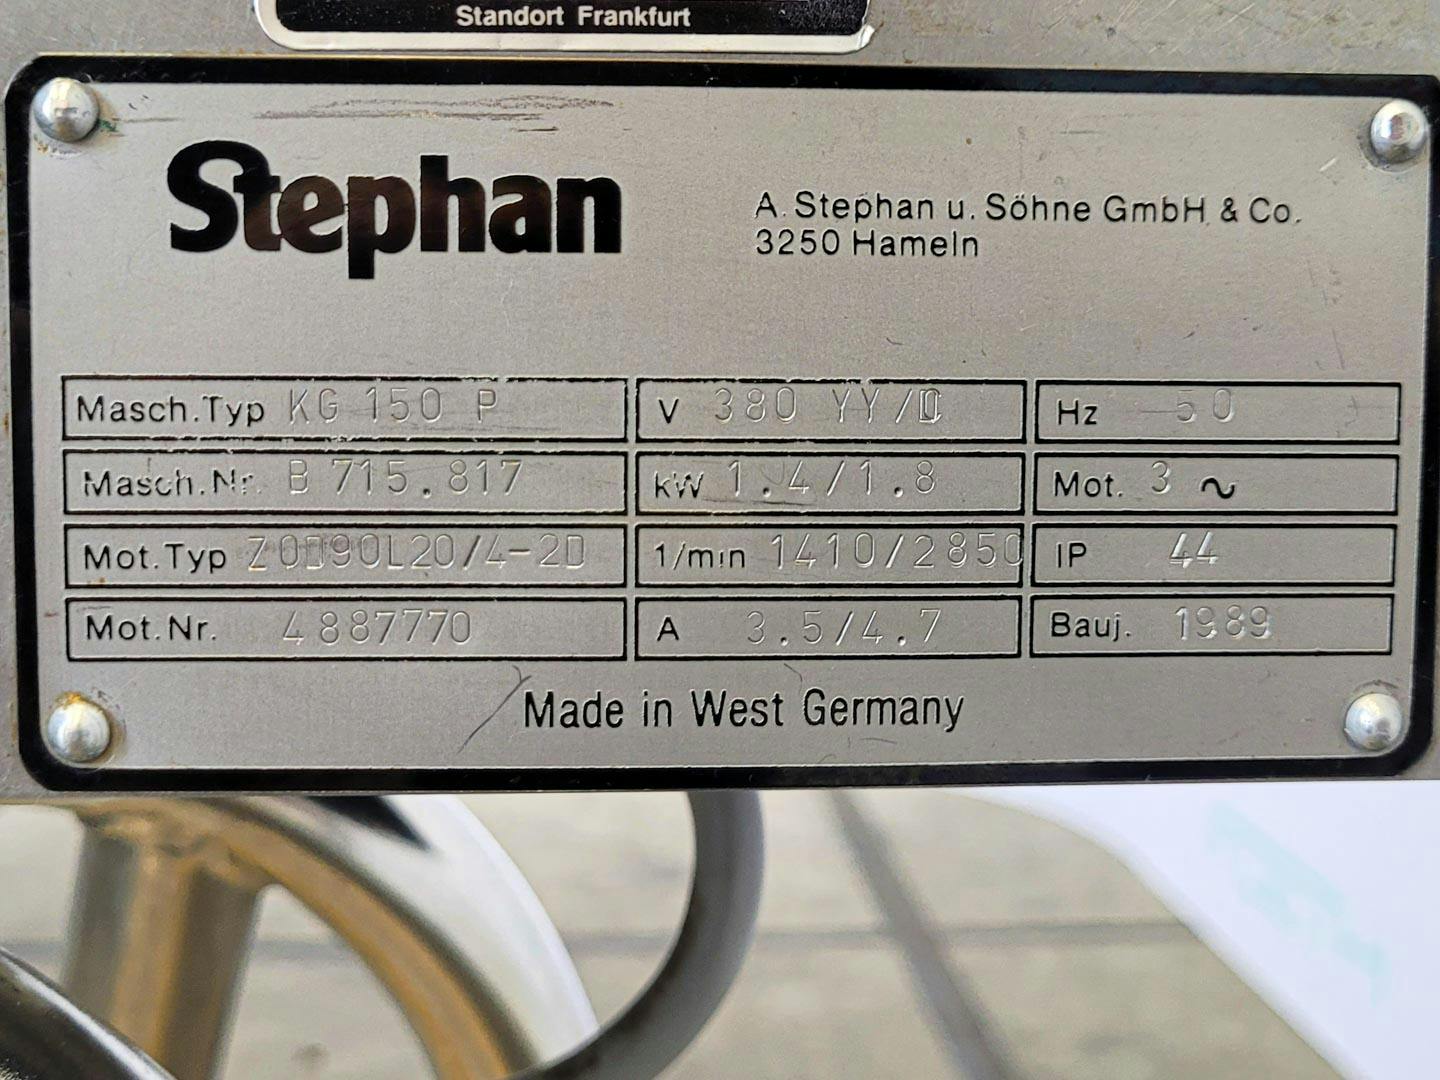 Stephan KG-150 P - Peneira granuladora - image 10